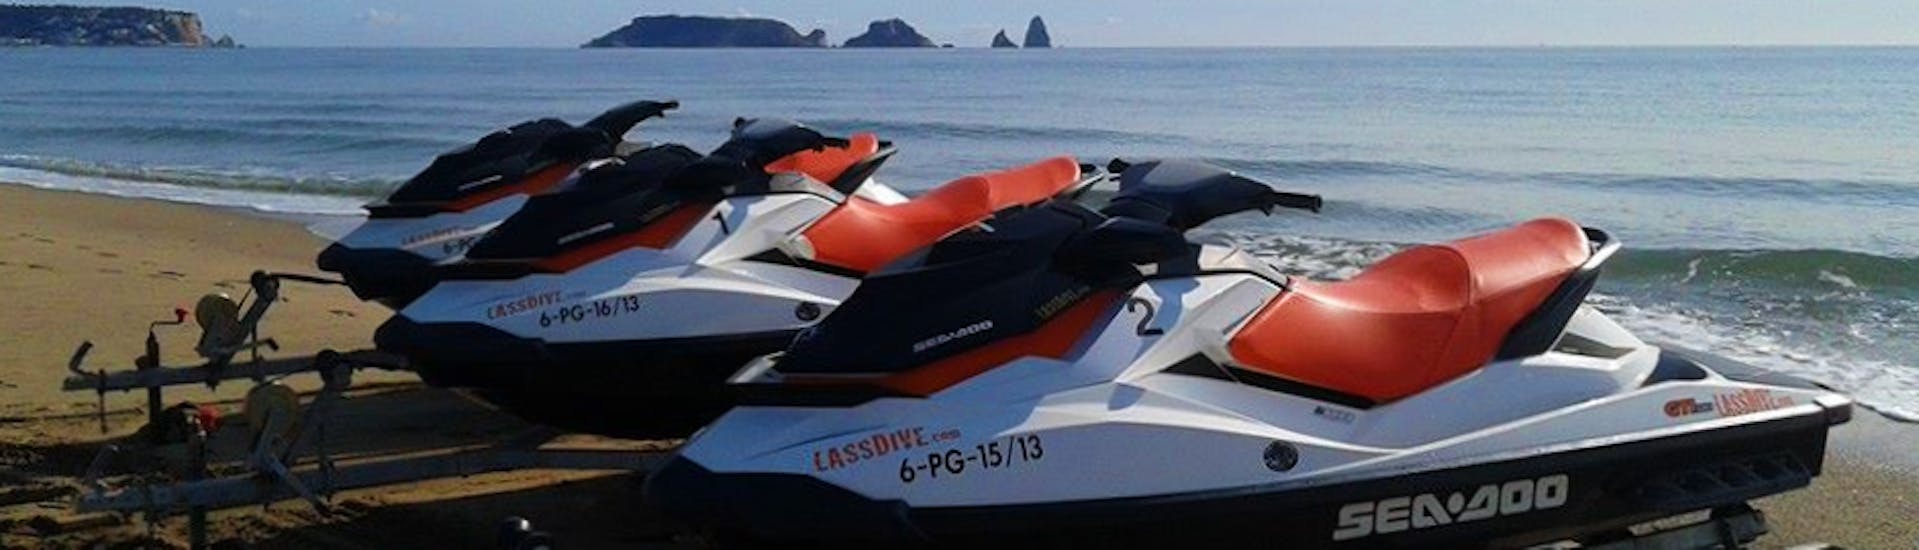 Algunas de nuestras motos de agua están listas para nuestro Jet Ski Safari por la Costa de Palamós y Calonge con Lassdive.